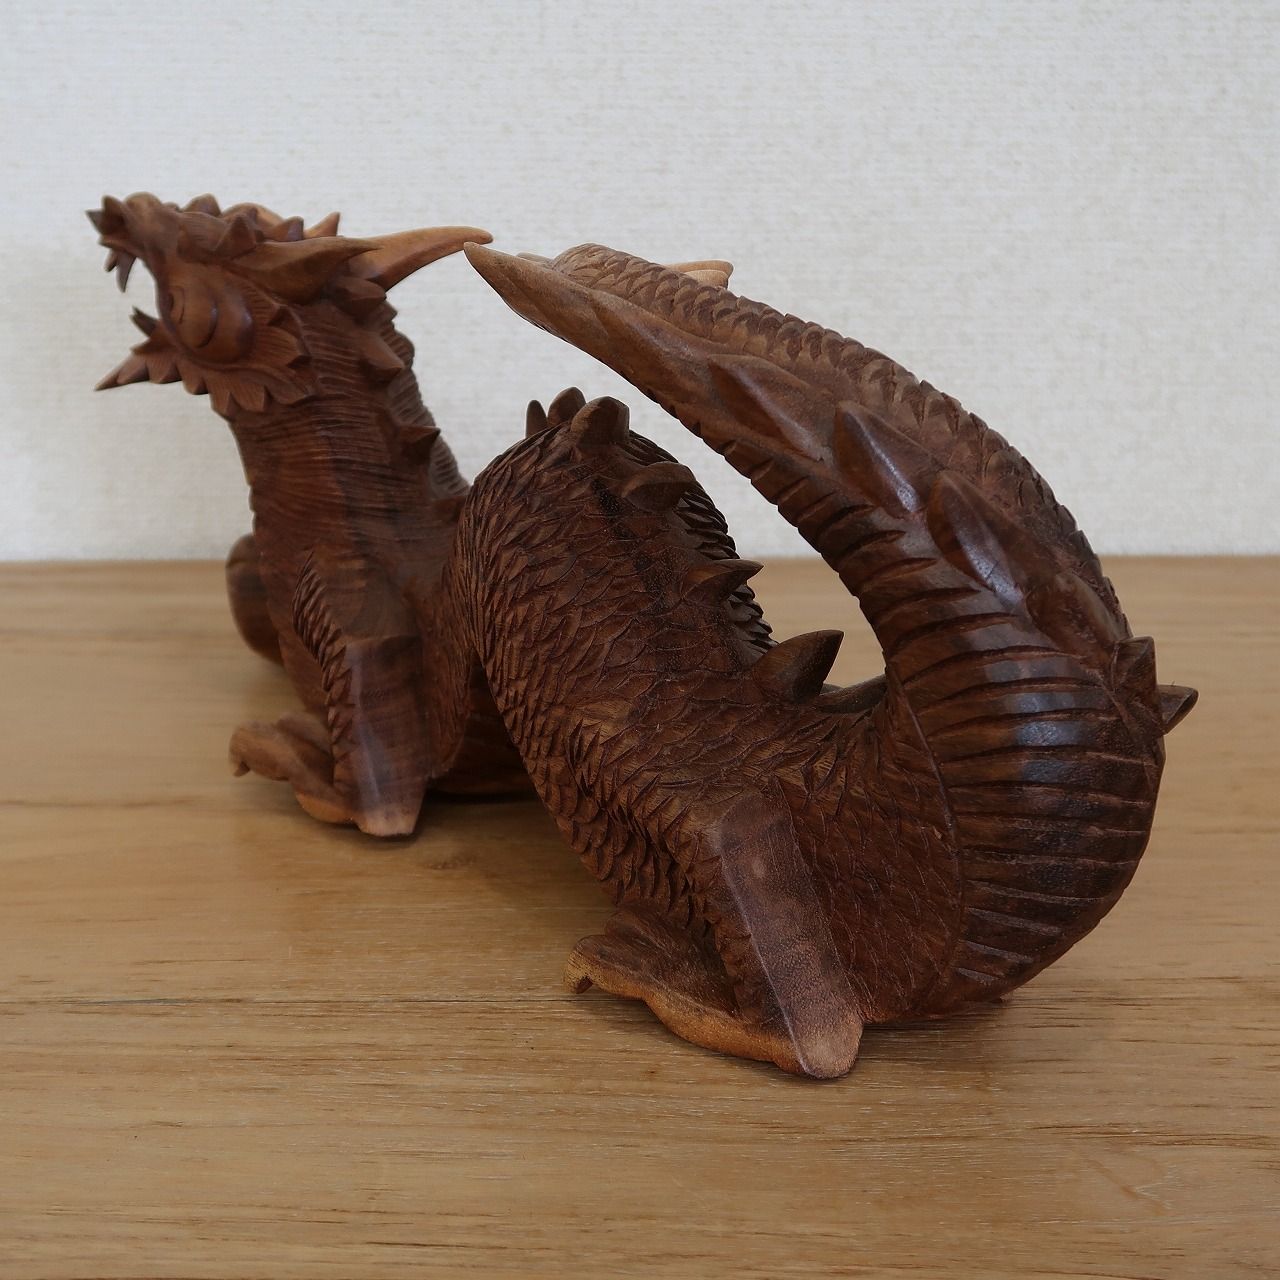 ドラゴンの木彫り 龍の木彫り スワール無垢材 左向き 40cm 竜の木彫り 